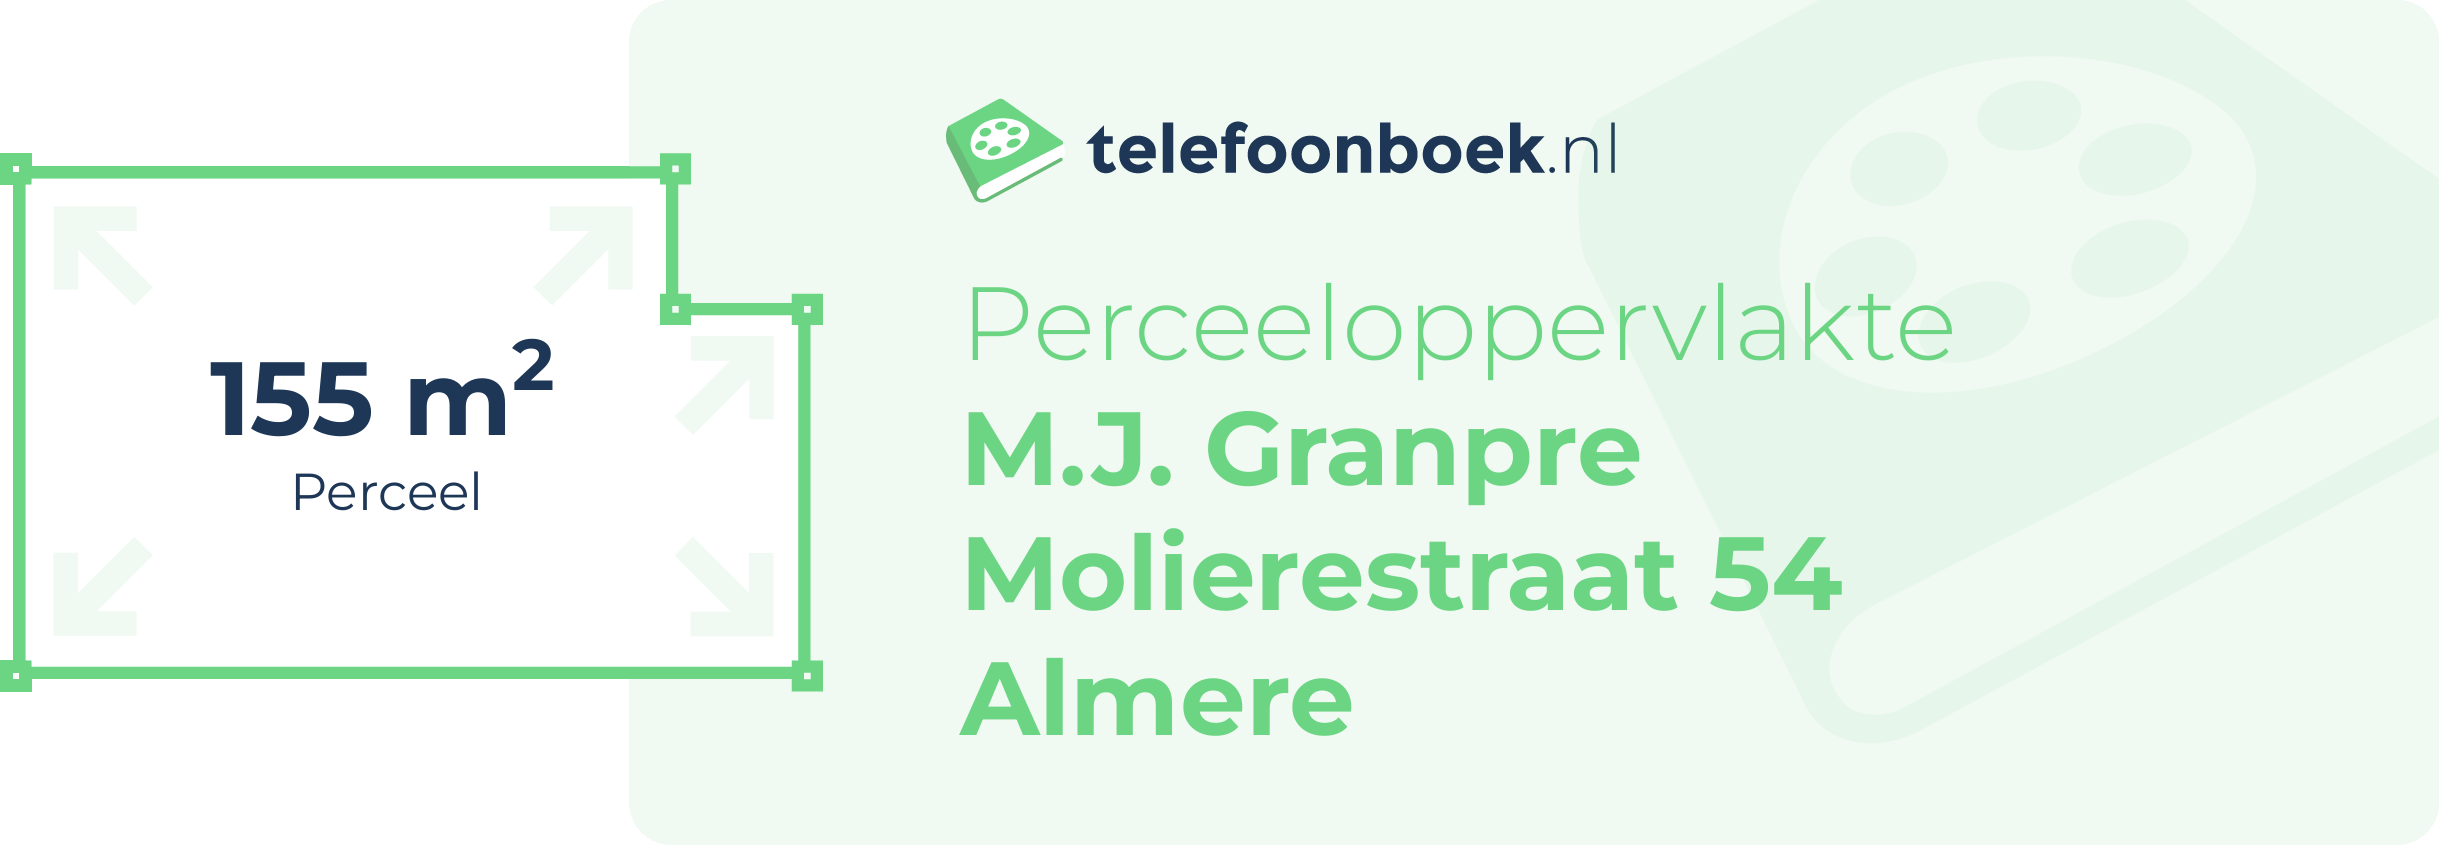 Perceeloppervlakte M.J. Granpre Molierestraat 54 Almere